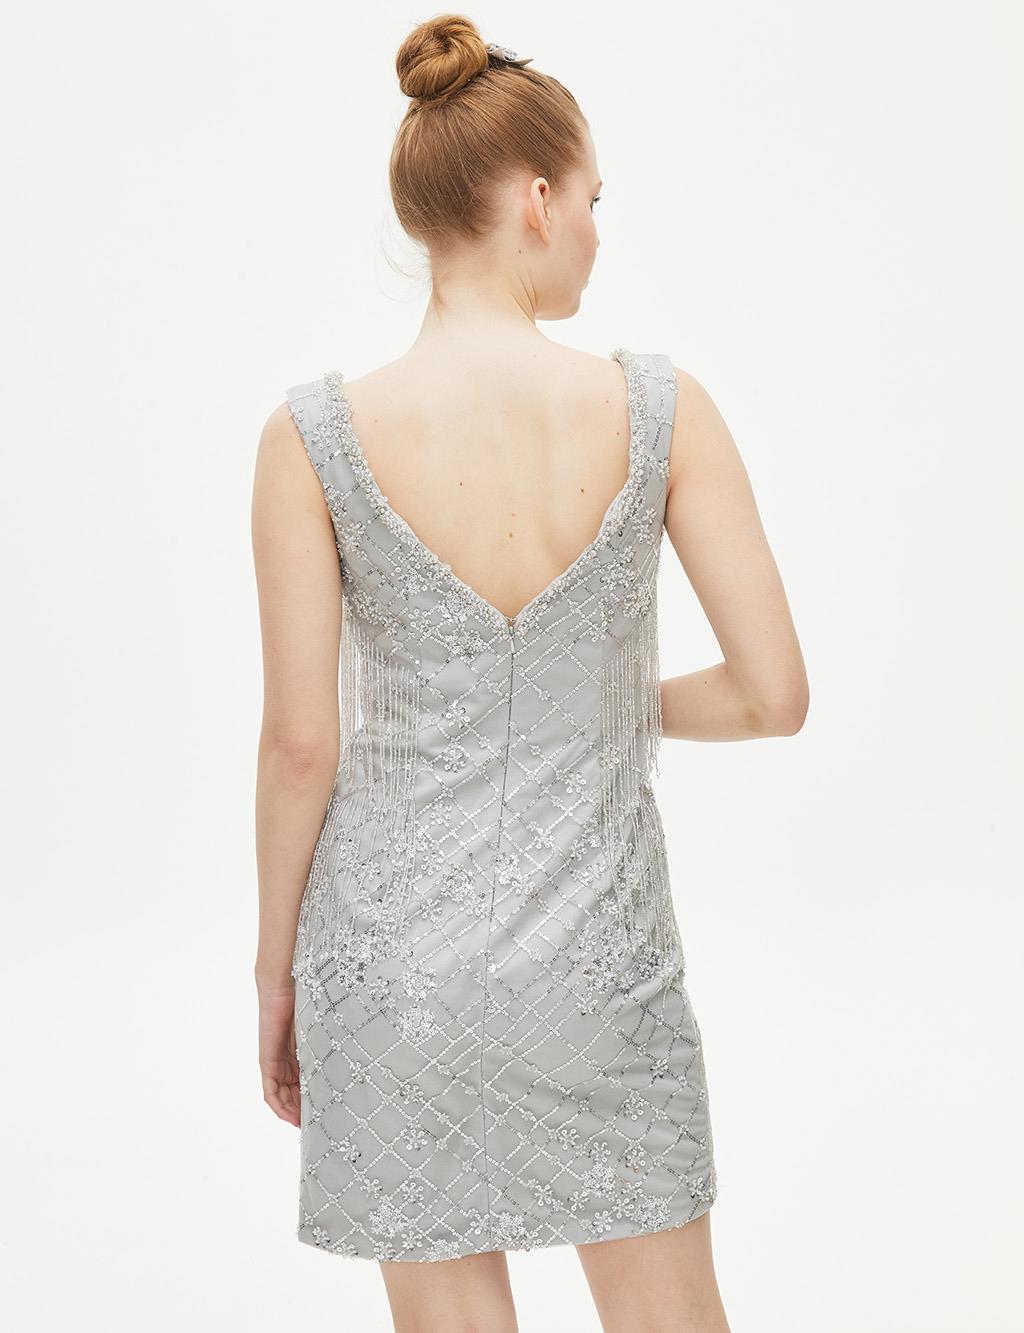 TIARA Embroidered Short Evening Dress Grey